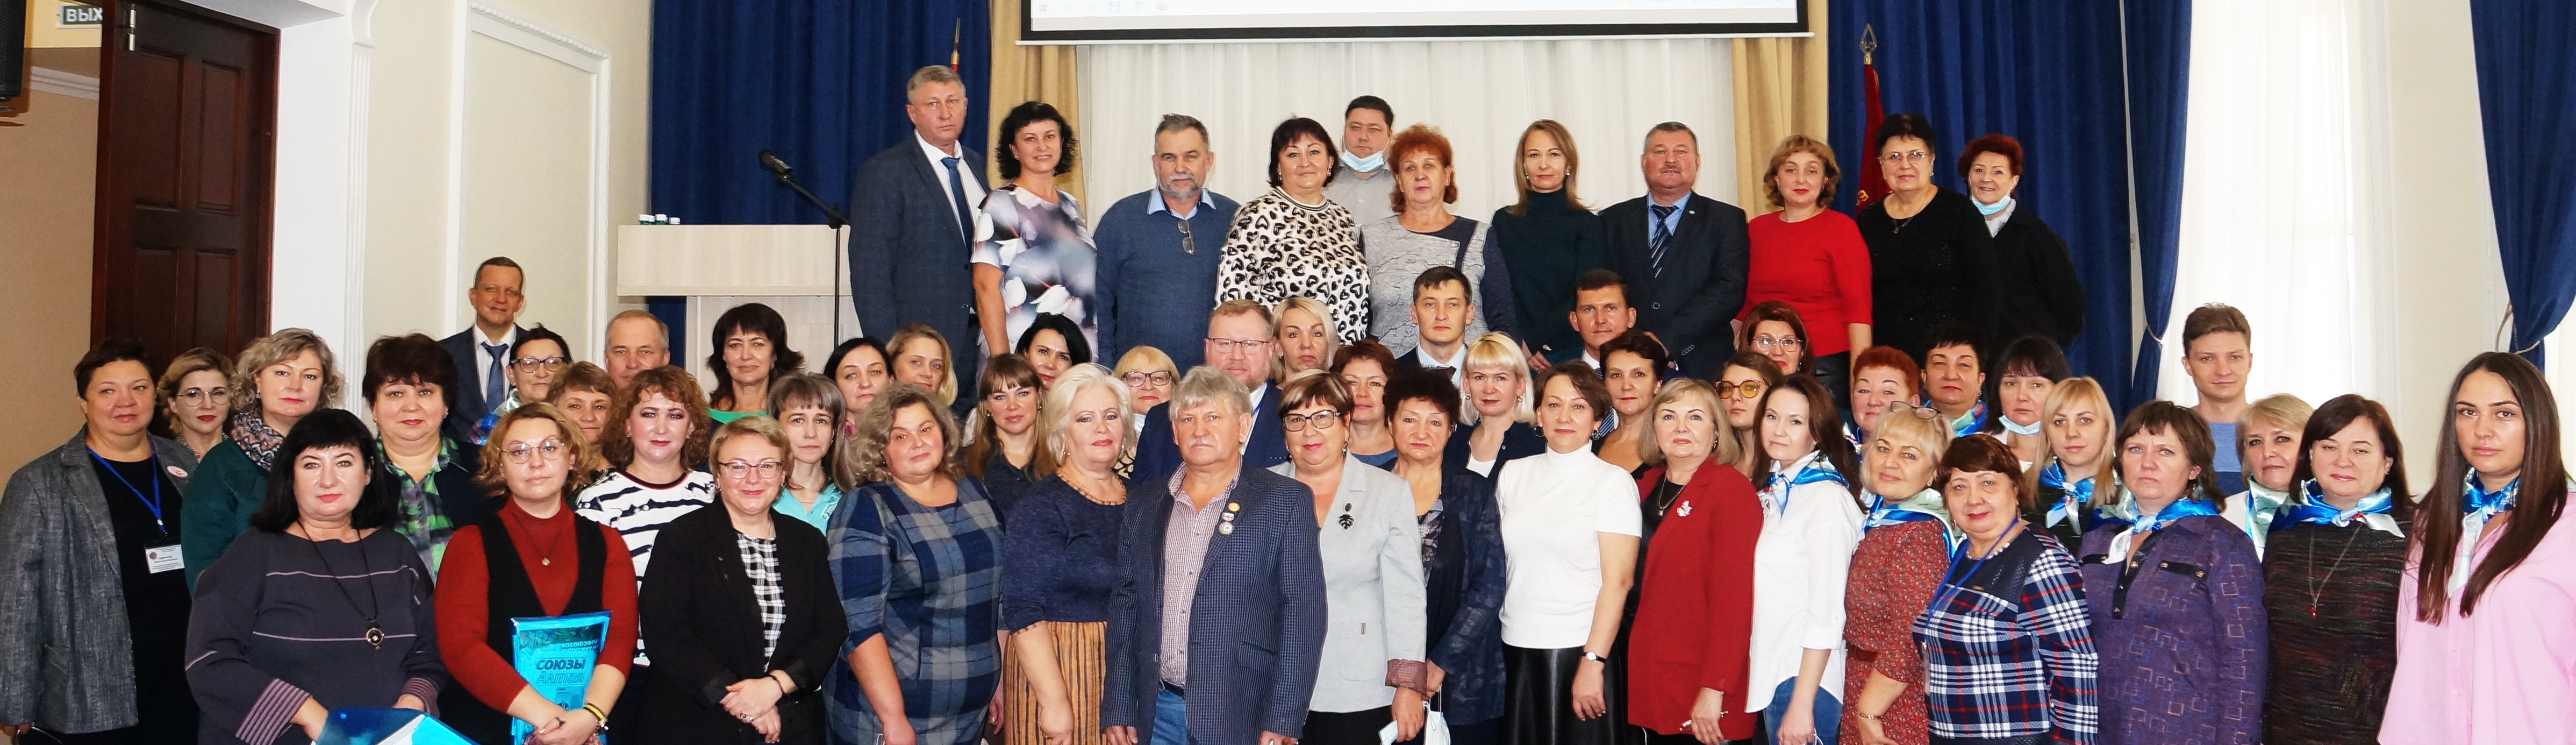 Алтайский крайсовпроф провел cобрание председателей первичных профсоюзных организаций региона